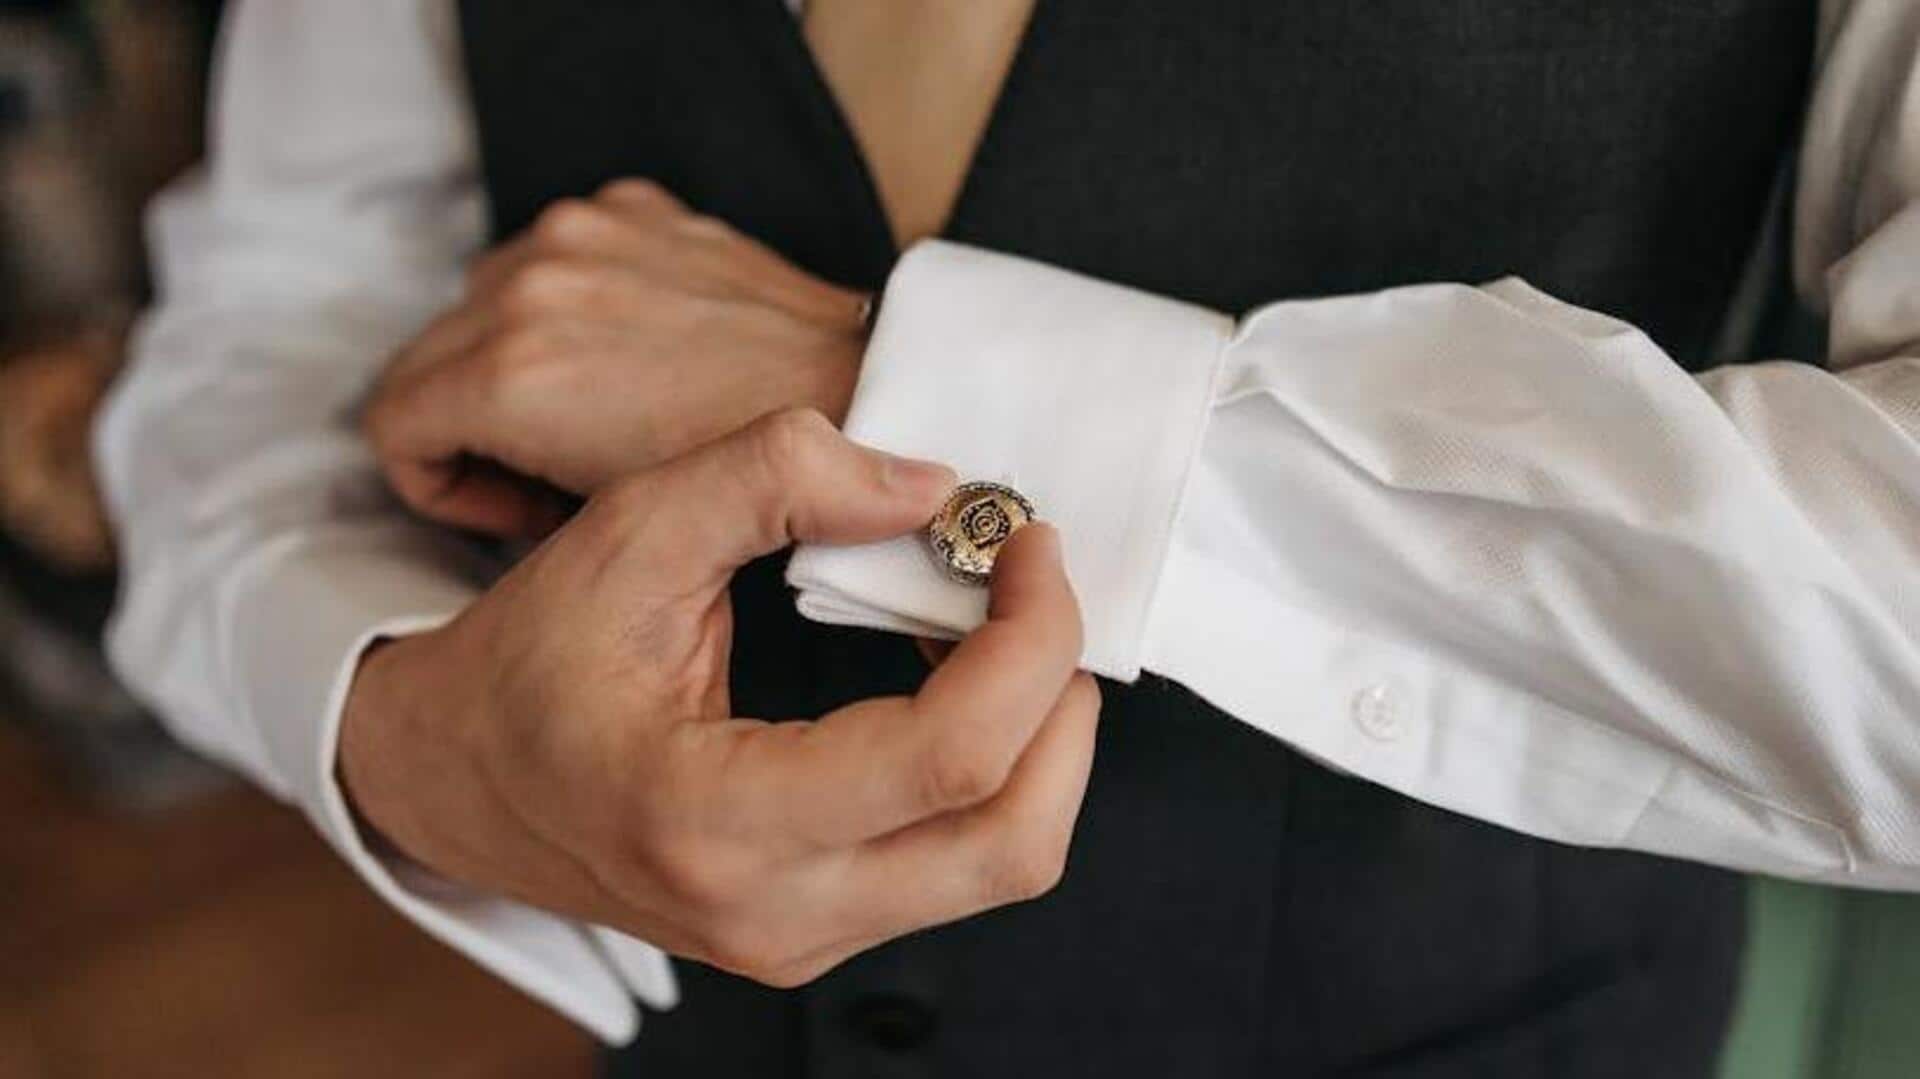 French cufflink elegance decoded